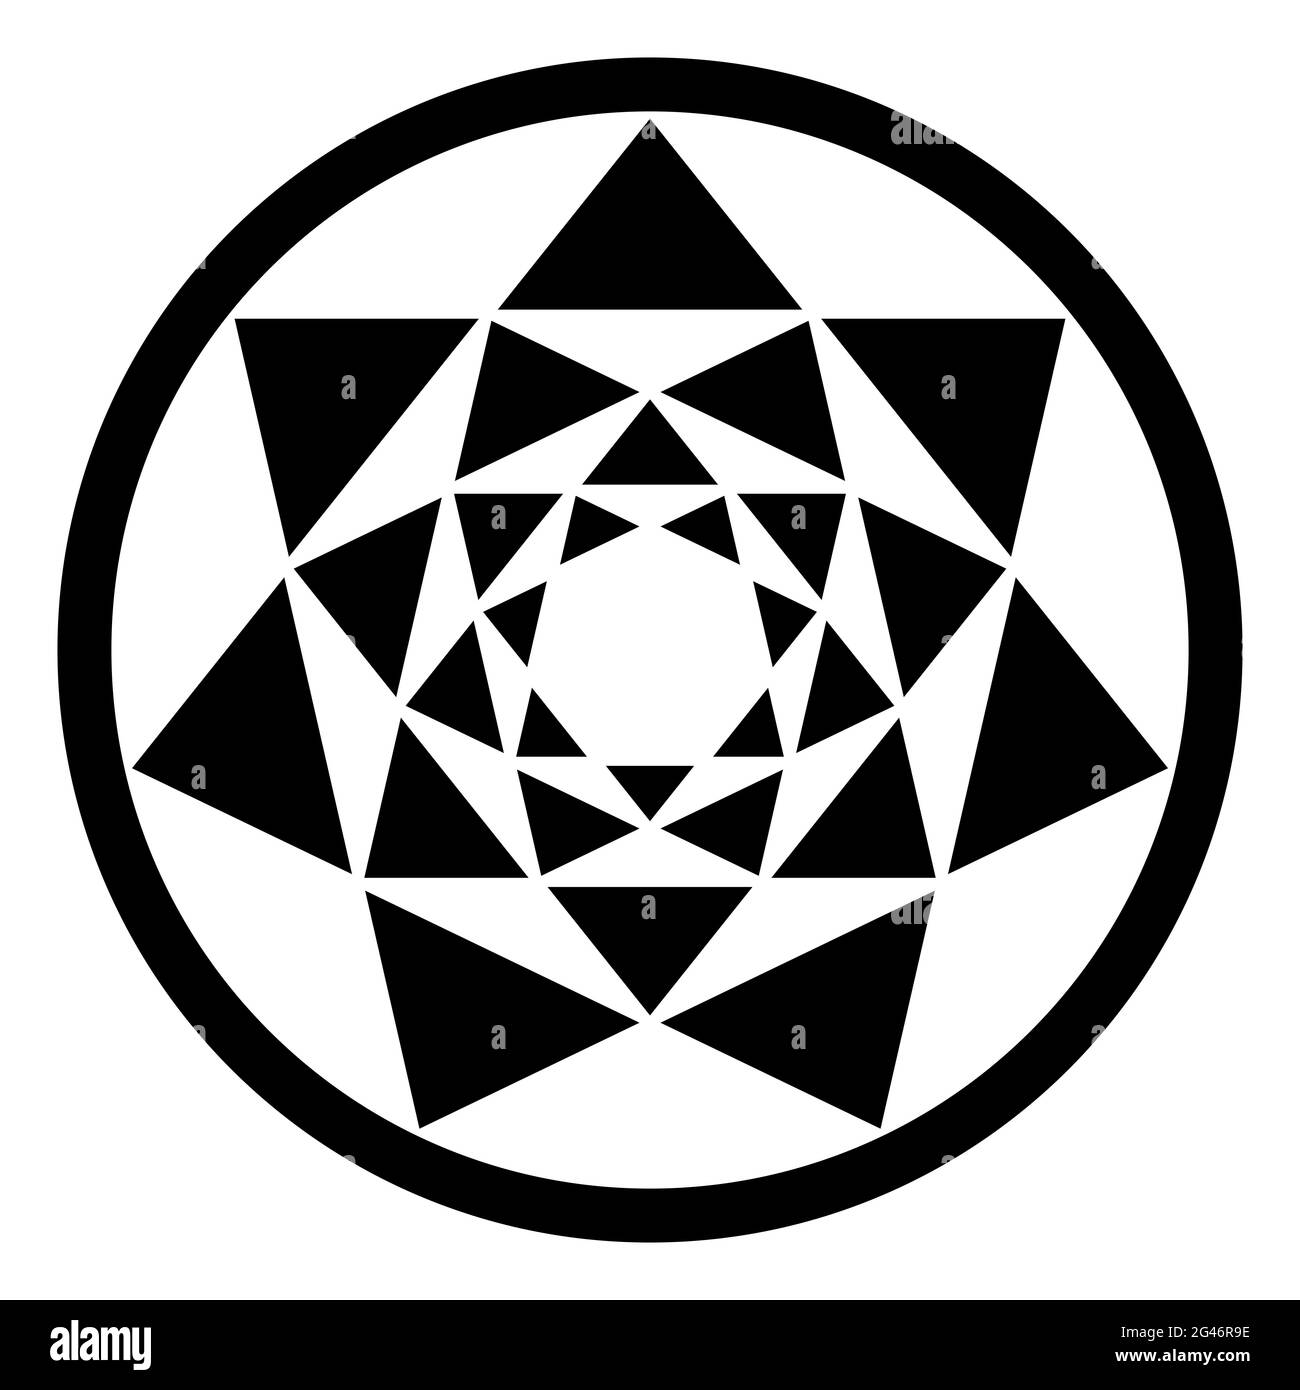 Quattro eptagrammi, e i loro risultanti modelli triangolari, in una cornice circolare. Punti di attraversamento di quattro stelle a sette punte, posti l'uno all'interno dell'altro. Foto Stock